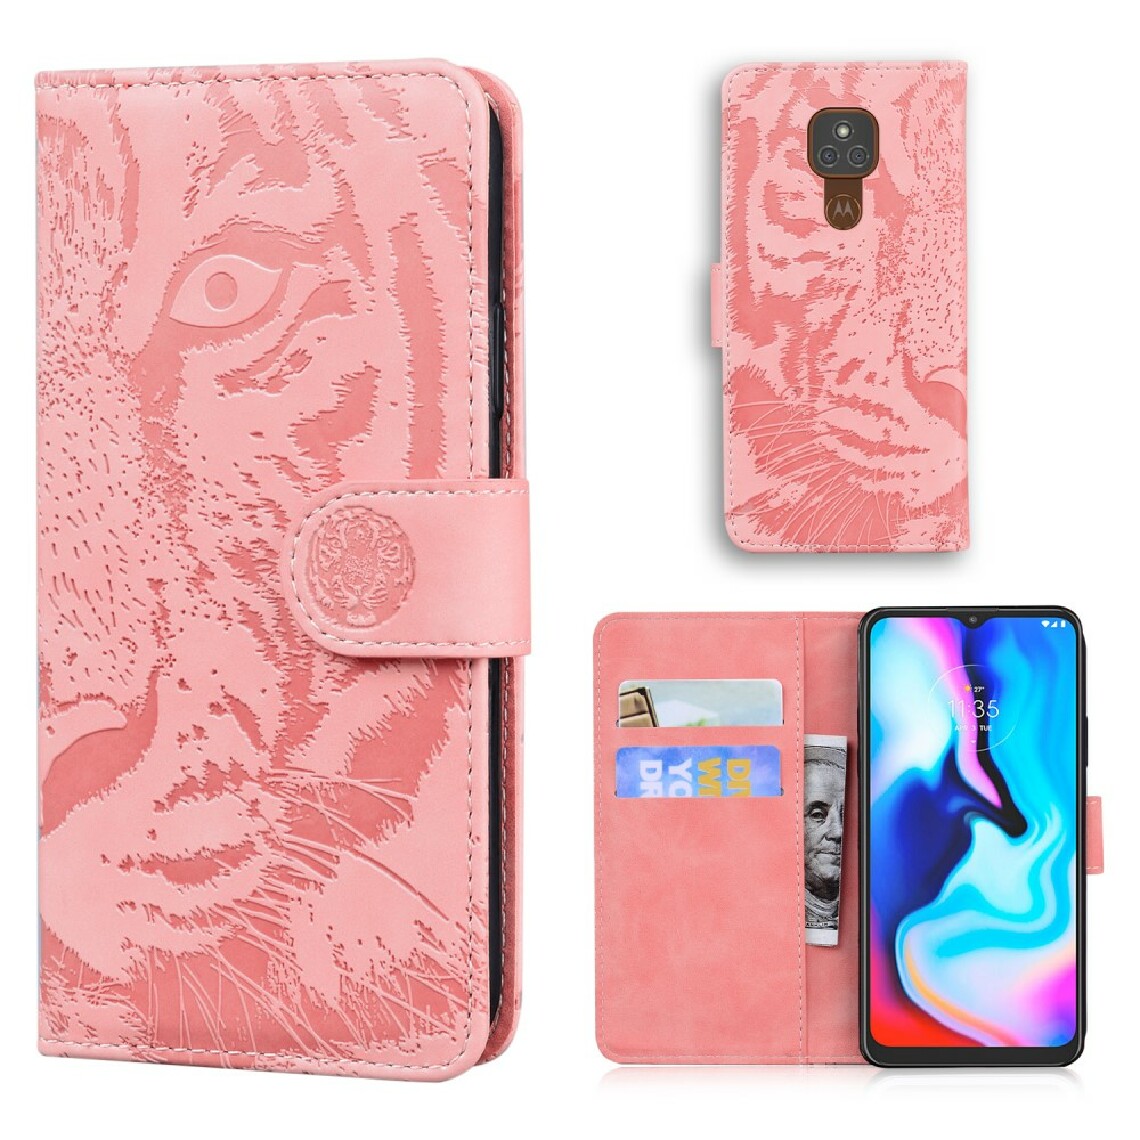 Other - Etui en PU impression de visage de tigre avec support rose pour votre Motorola Moto G9 Play/E7 Plus - Coque, étui smartphone